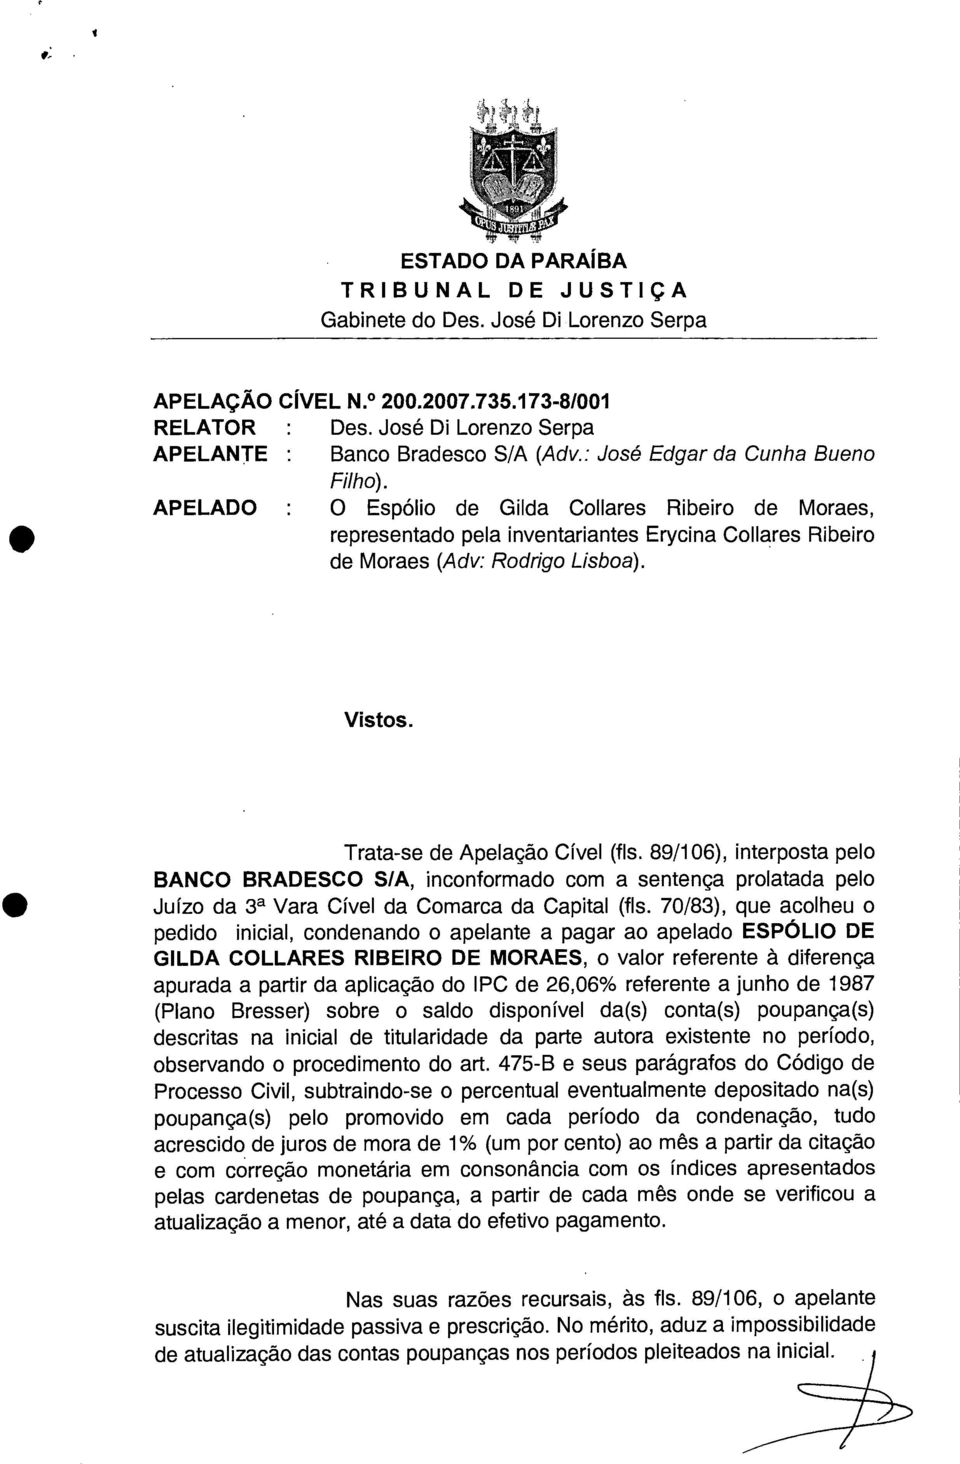 Trata-se de Apelação Cível (fls. 89/106), interposta pelo BANCO BRADESCO S/A, inconformado com a sentença prolatada pelo Juízo da 3a Vara Cível da Comarca da Capital (fls.